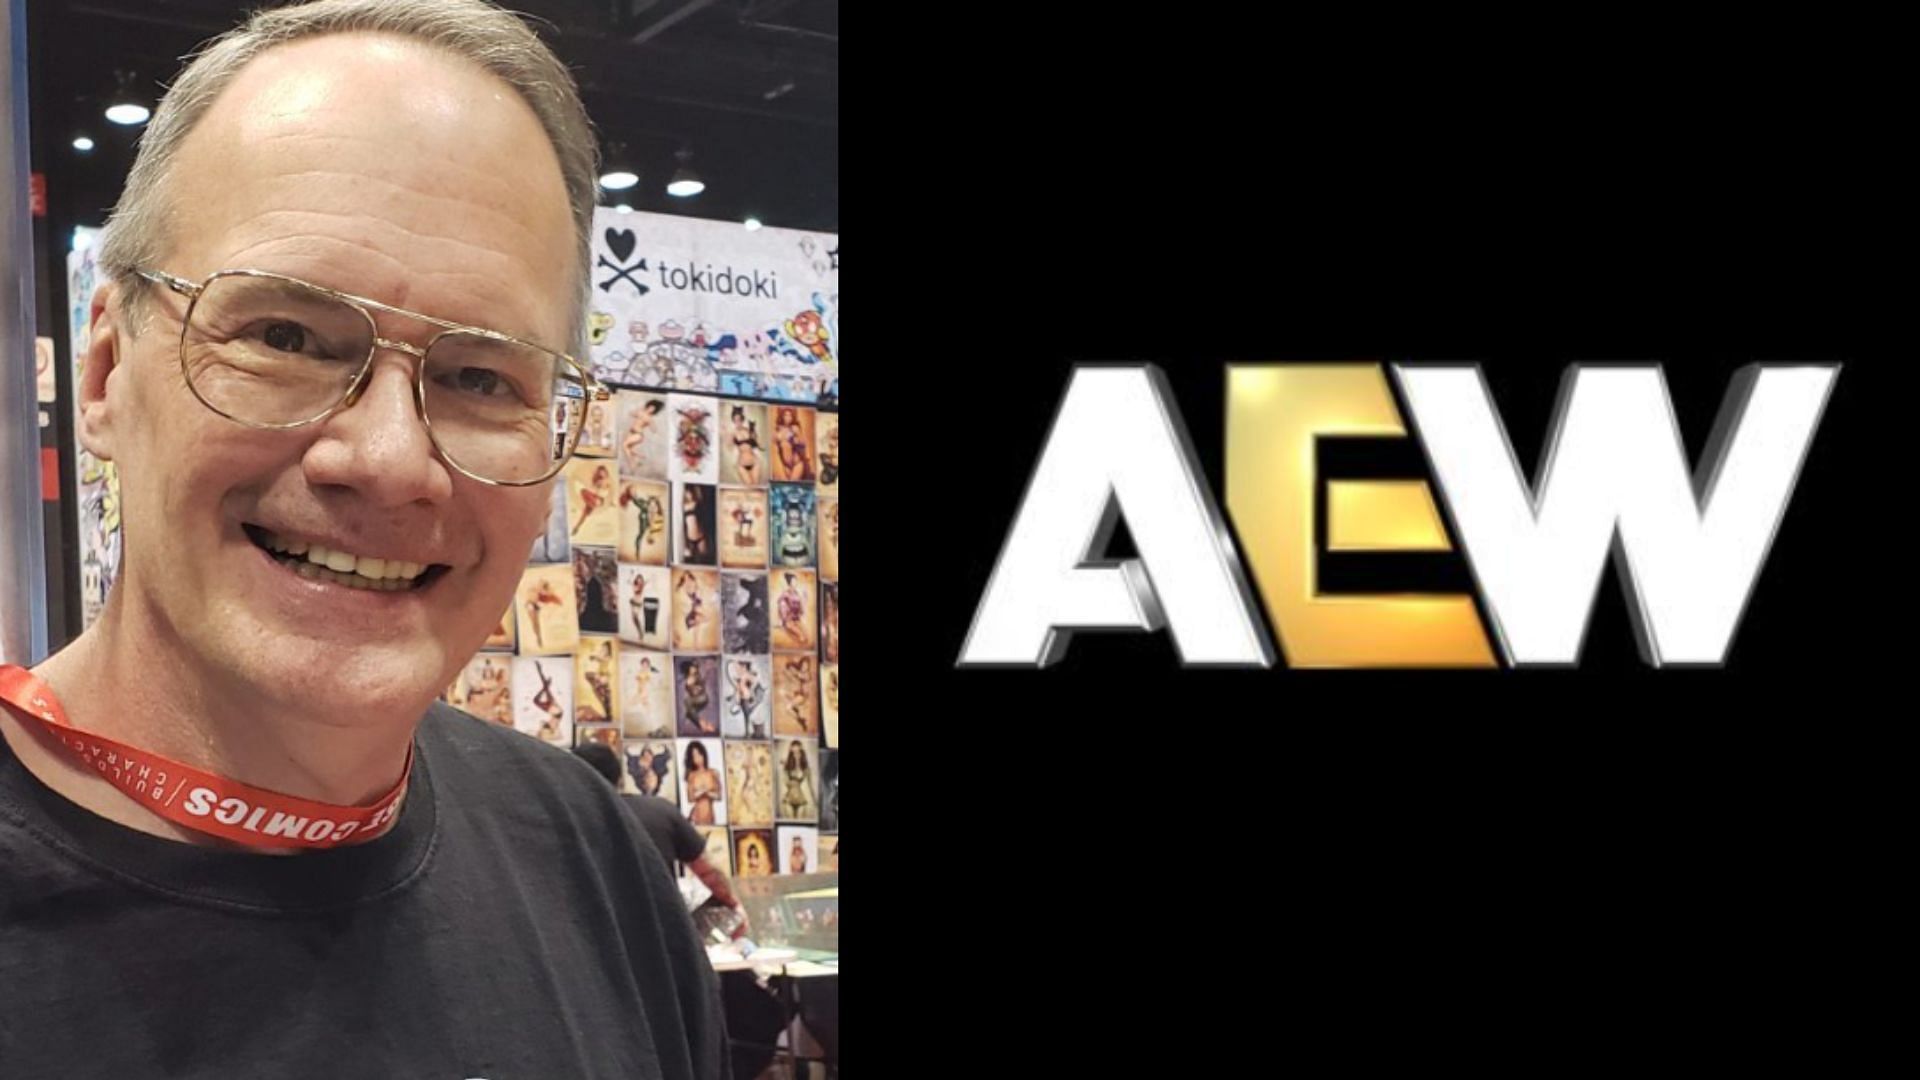 Jim Cornette is a vocal critic of AEW [Image Credits: Jim Cornette and AEW